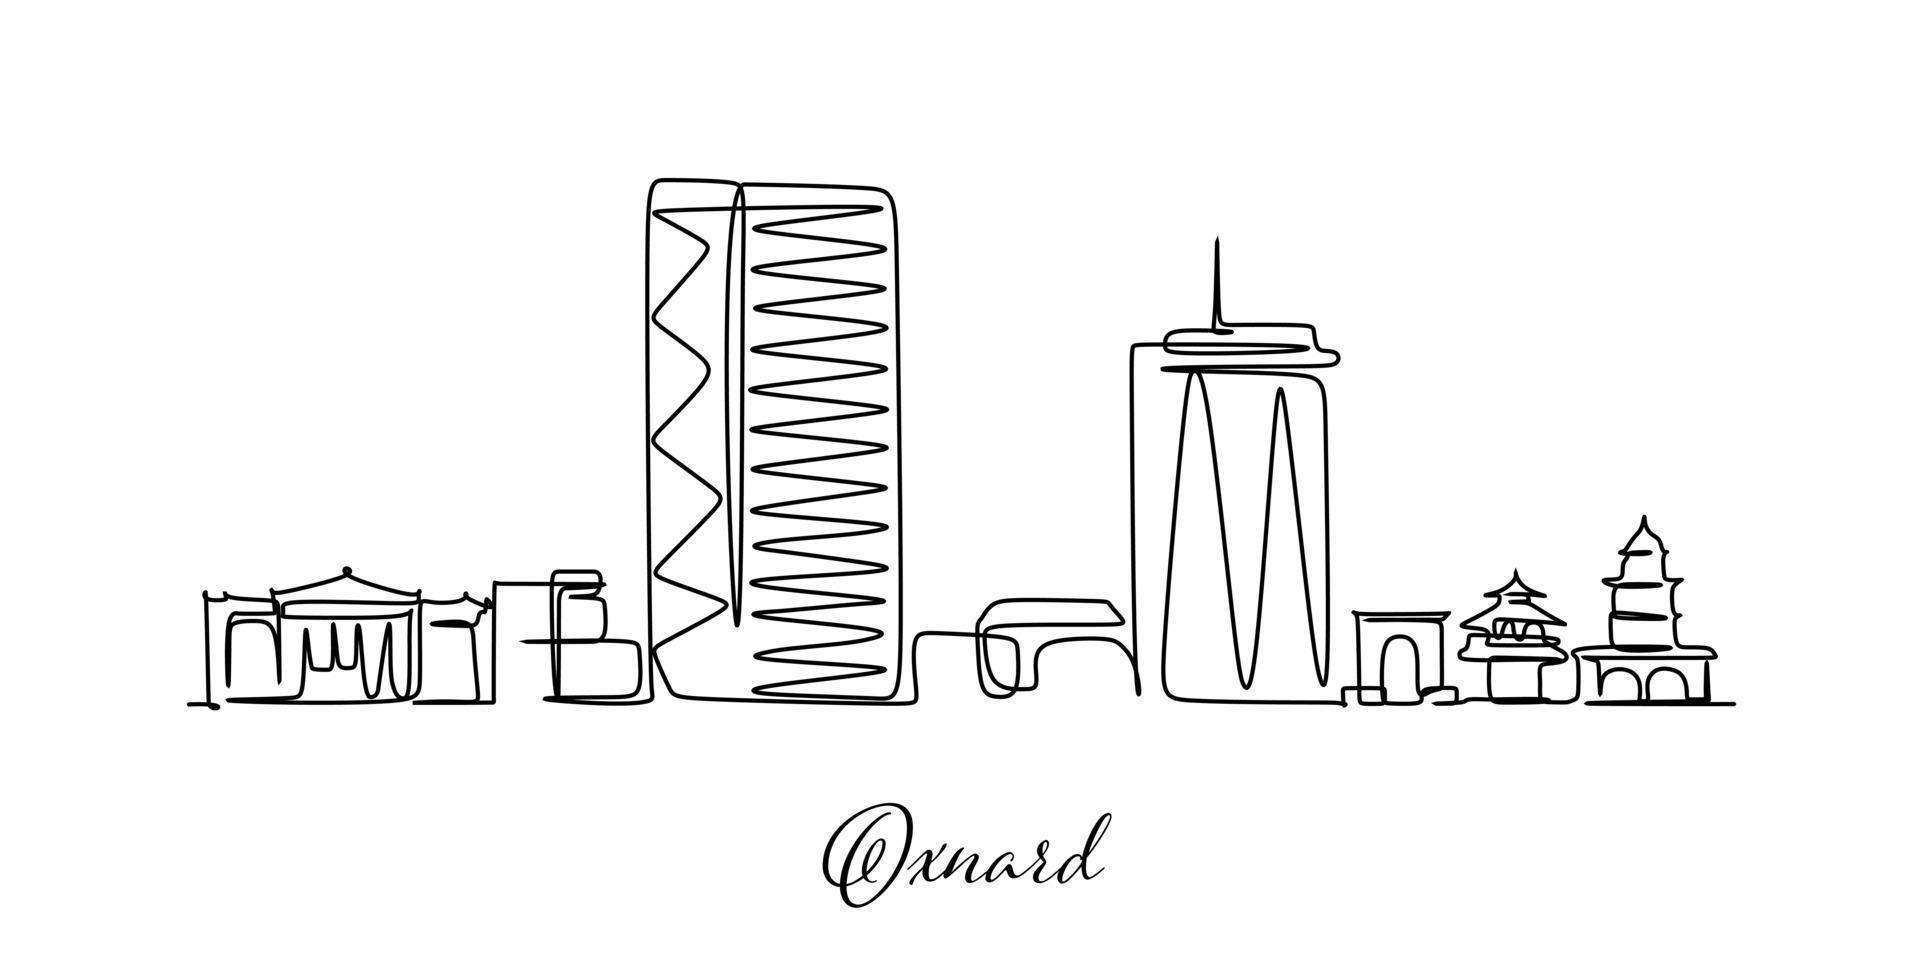 Oxnard stad Californië Verenigde Staten van Amerika horizon. een doorlopend lijn tekening ontwerp vector voor reizen en toerisme bedrijf reclame illustratie en concept